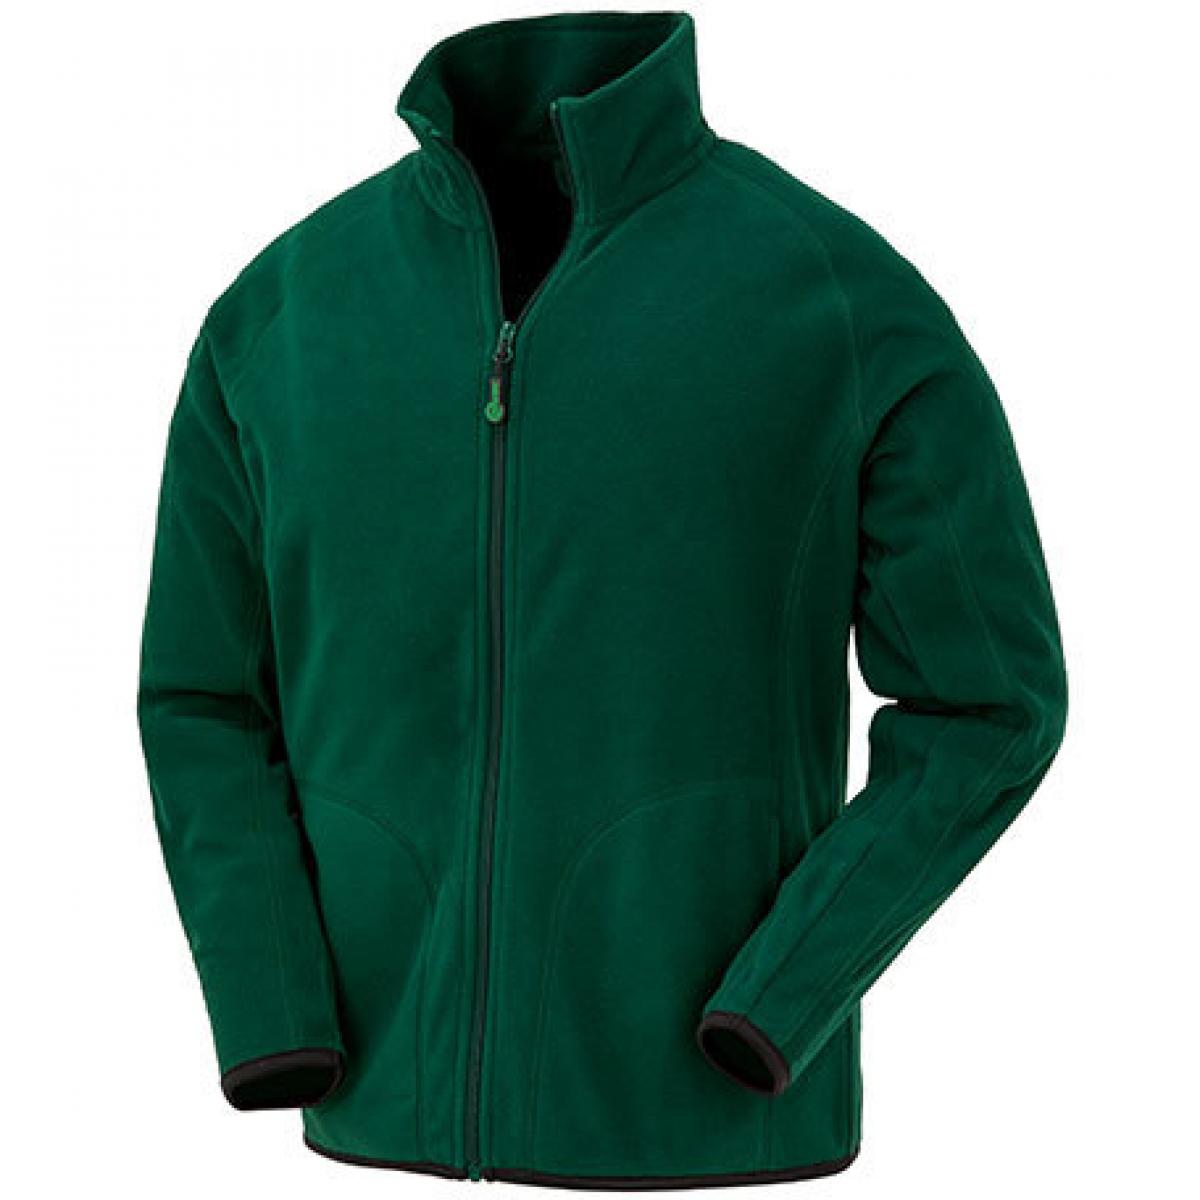 Hersteller: Result Genuine Recycled Herstellernummer: R907X Artikelbezeichnung: Recycled Microfleece Jacket Farbe: Forest Green